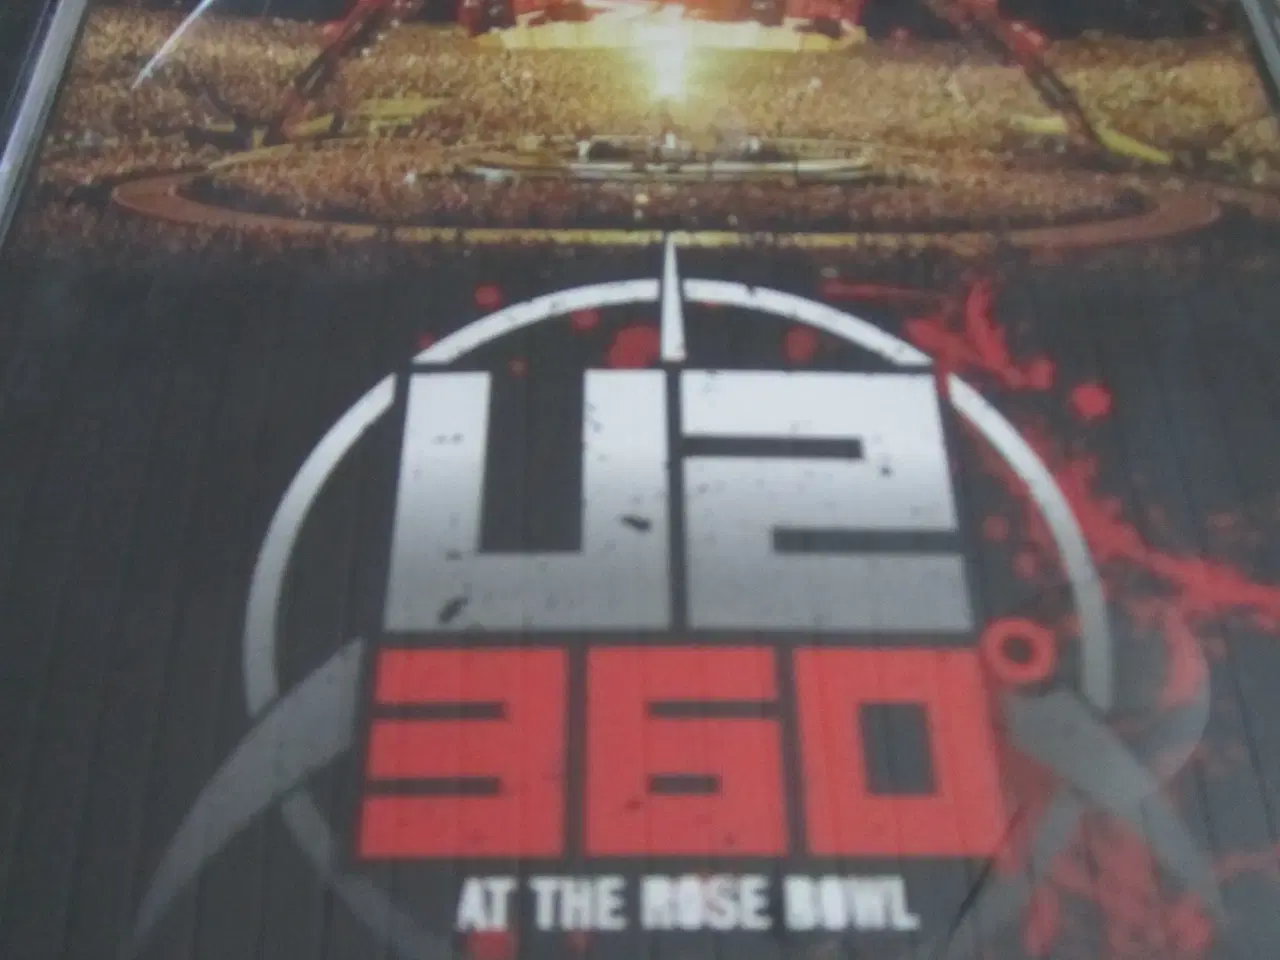 Billede 1 - U2 360. At the rose bowl.